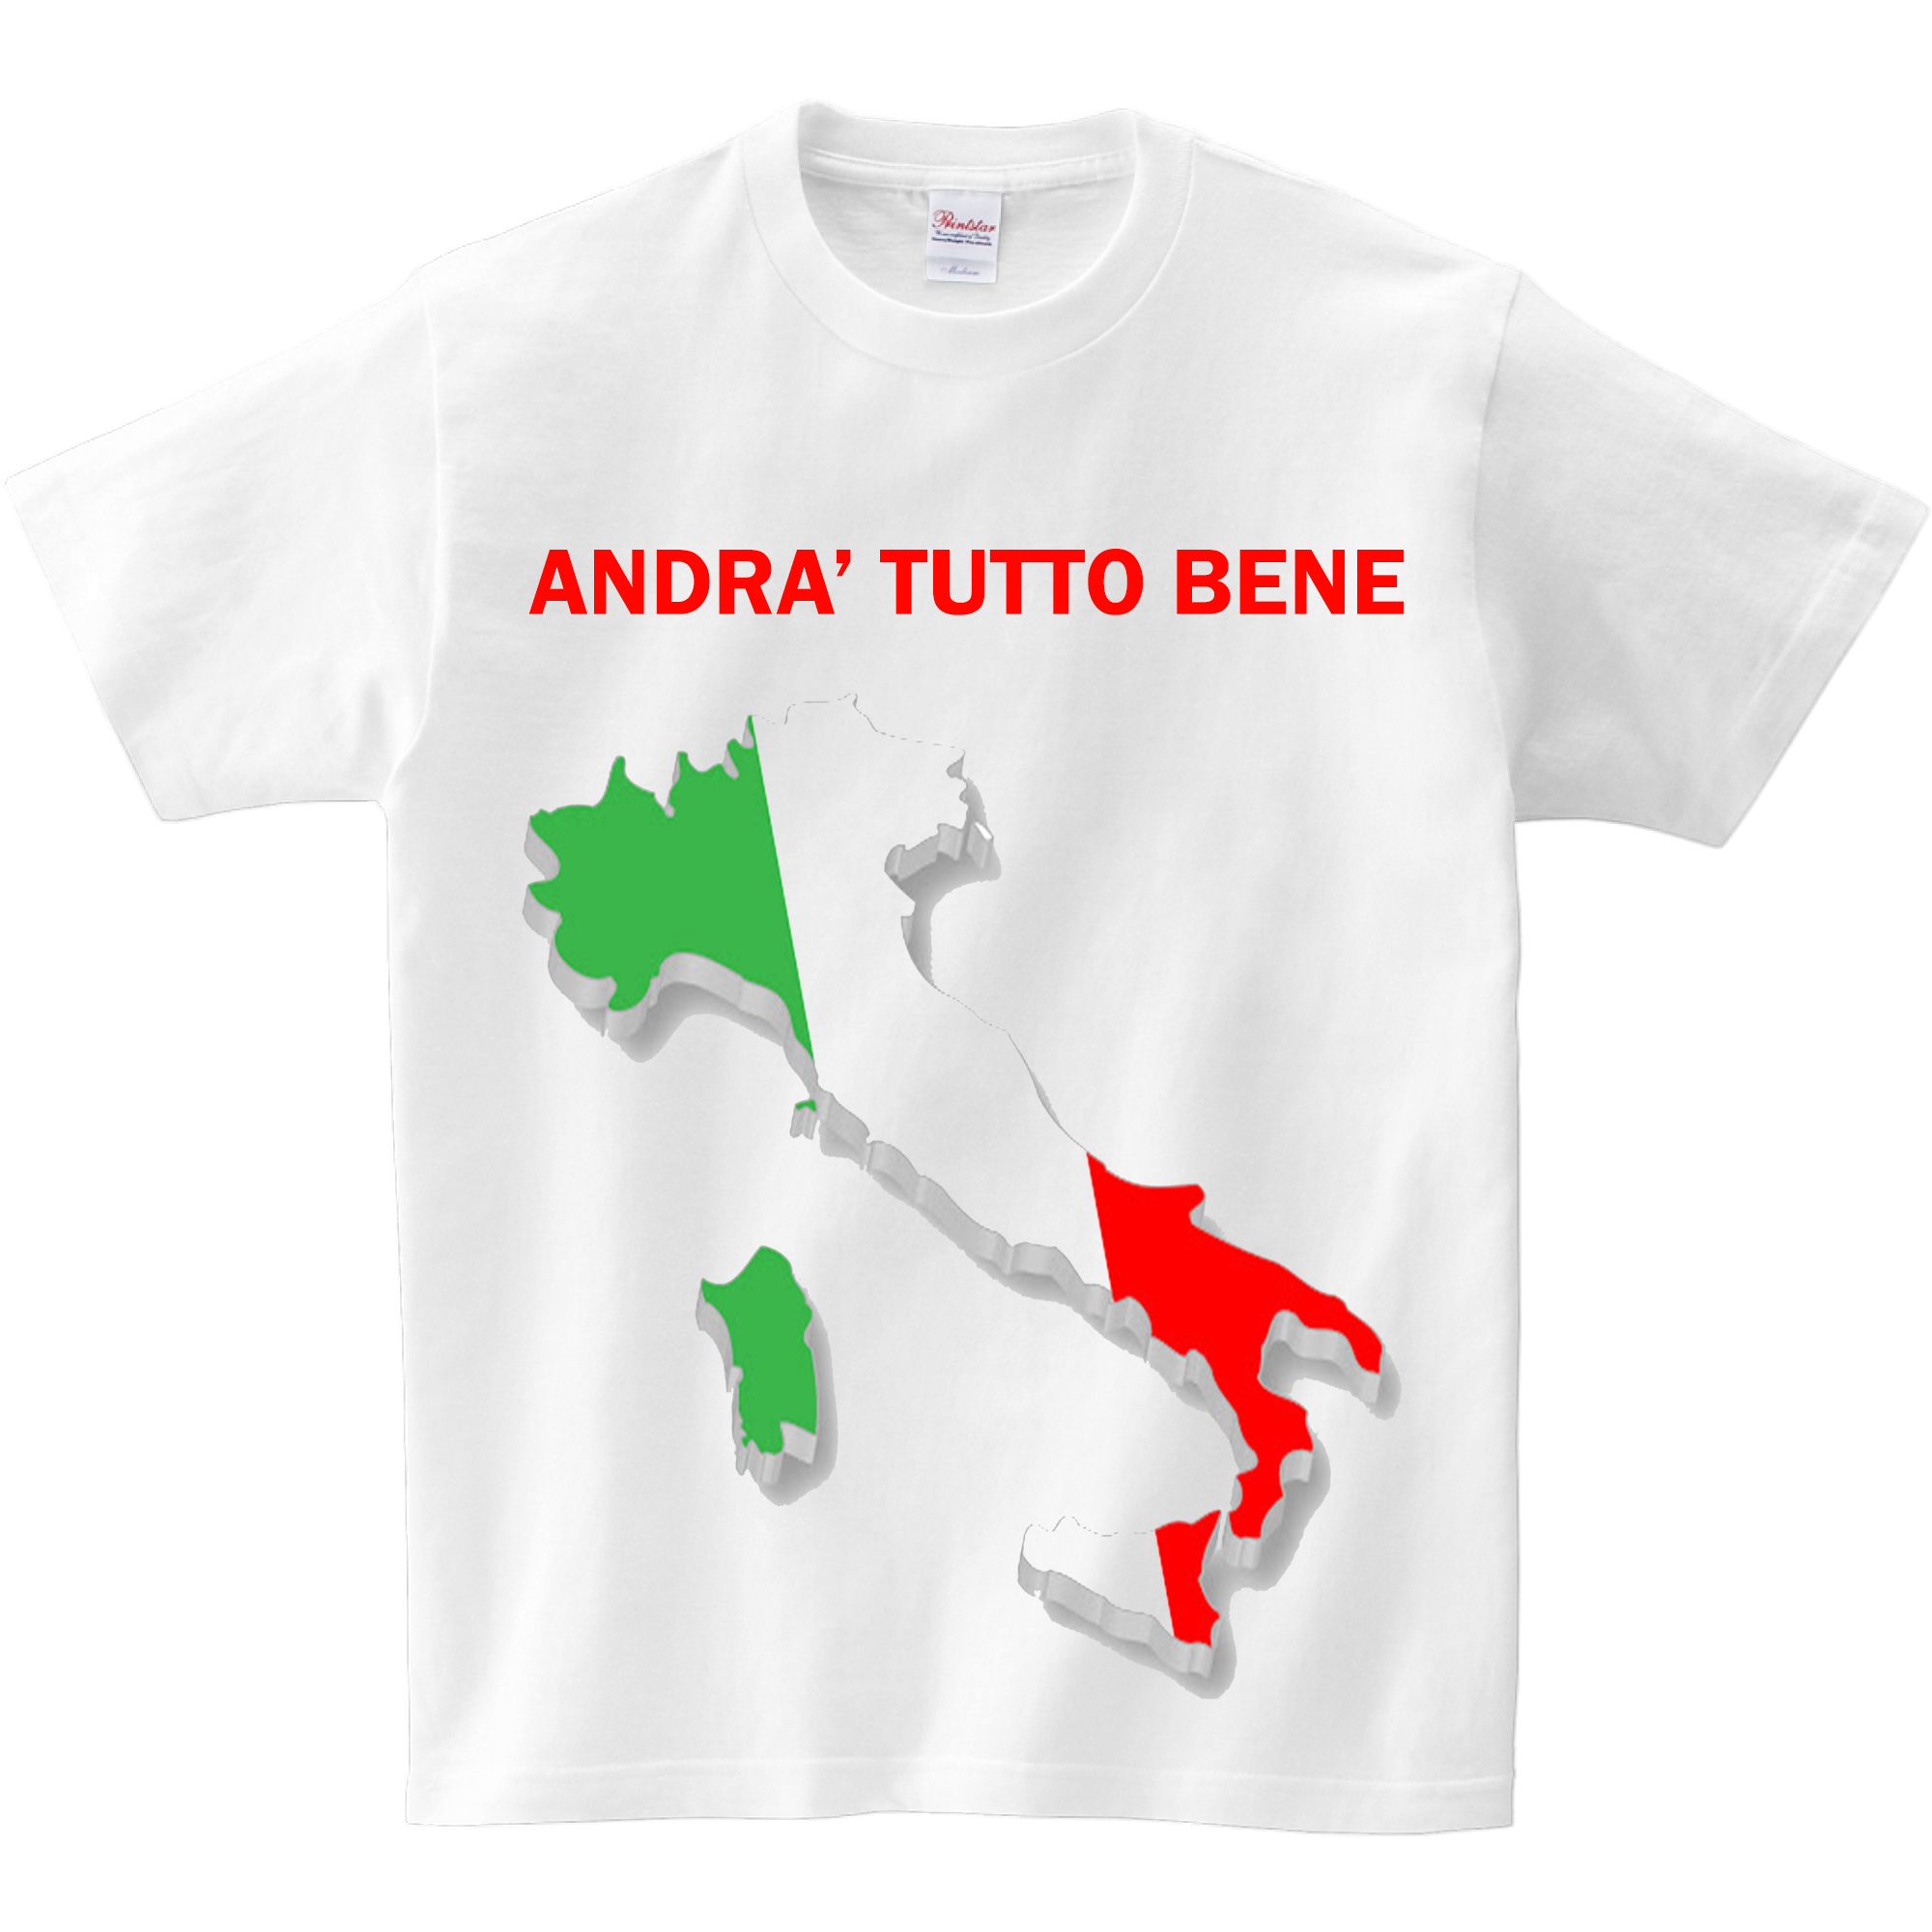 T - Shirt "ANDRA' TUTTO BENE"